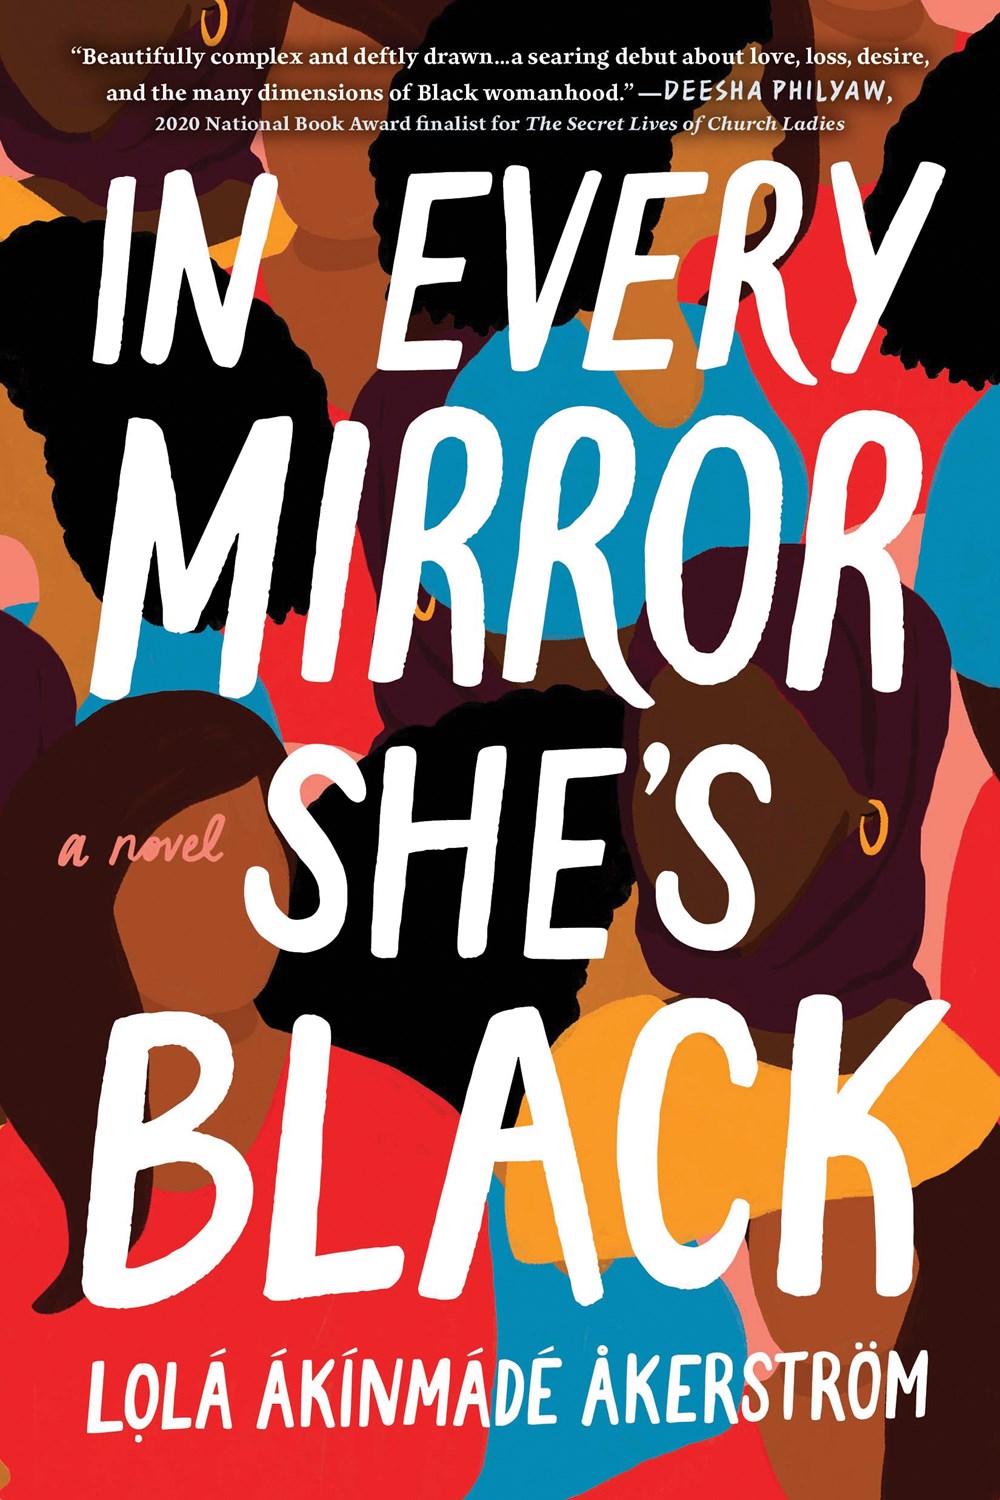 In Every Mirror She’s Black by Lolá Ákínmádé Åkerström